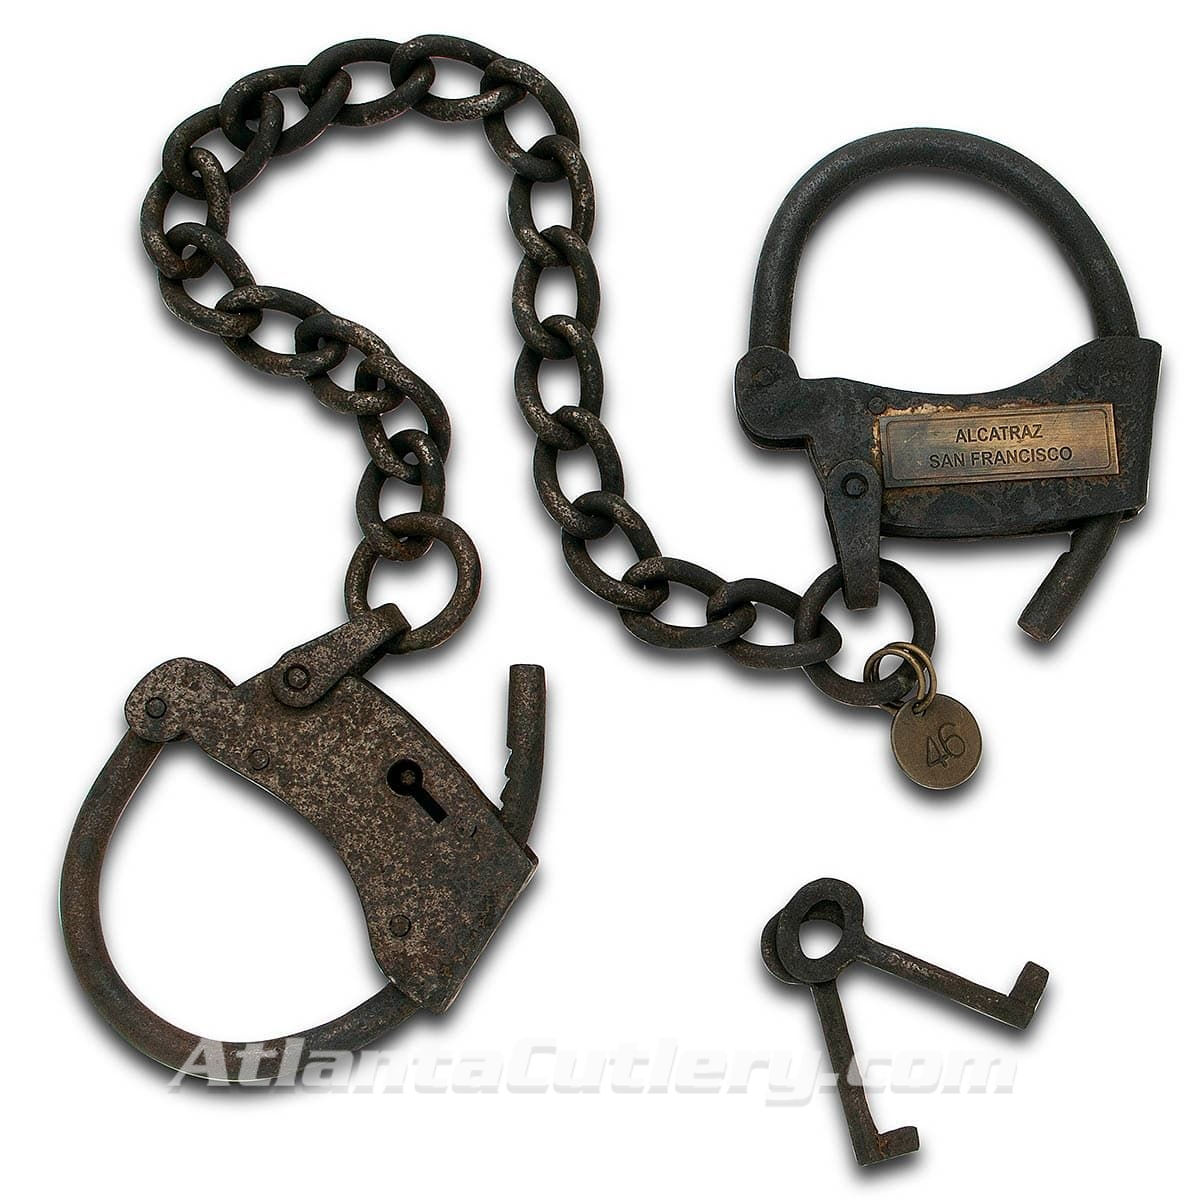 Alcatraz Hand Cuffs with Keys